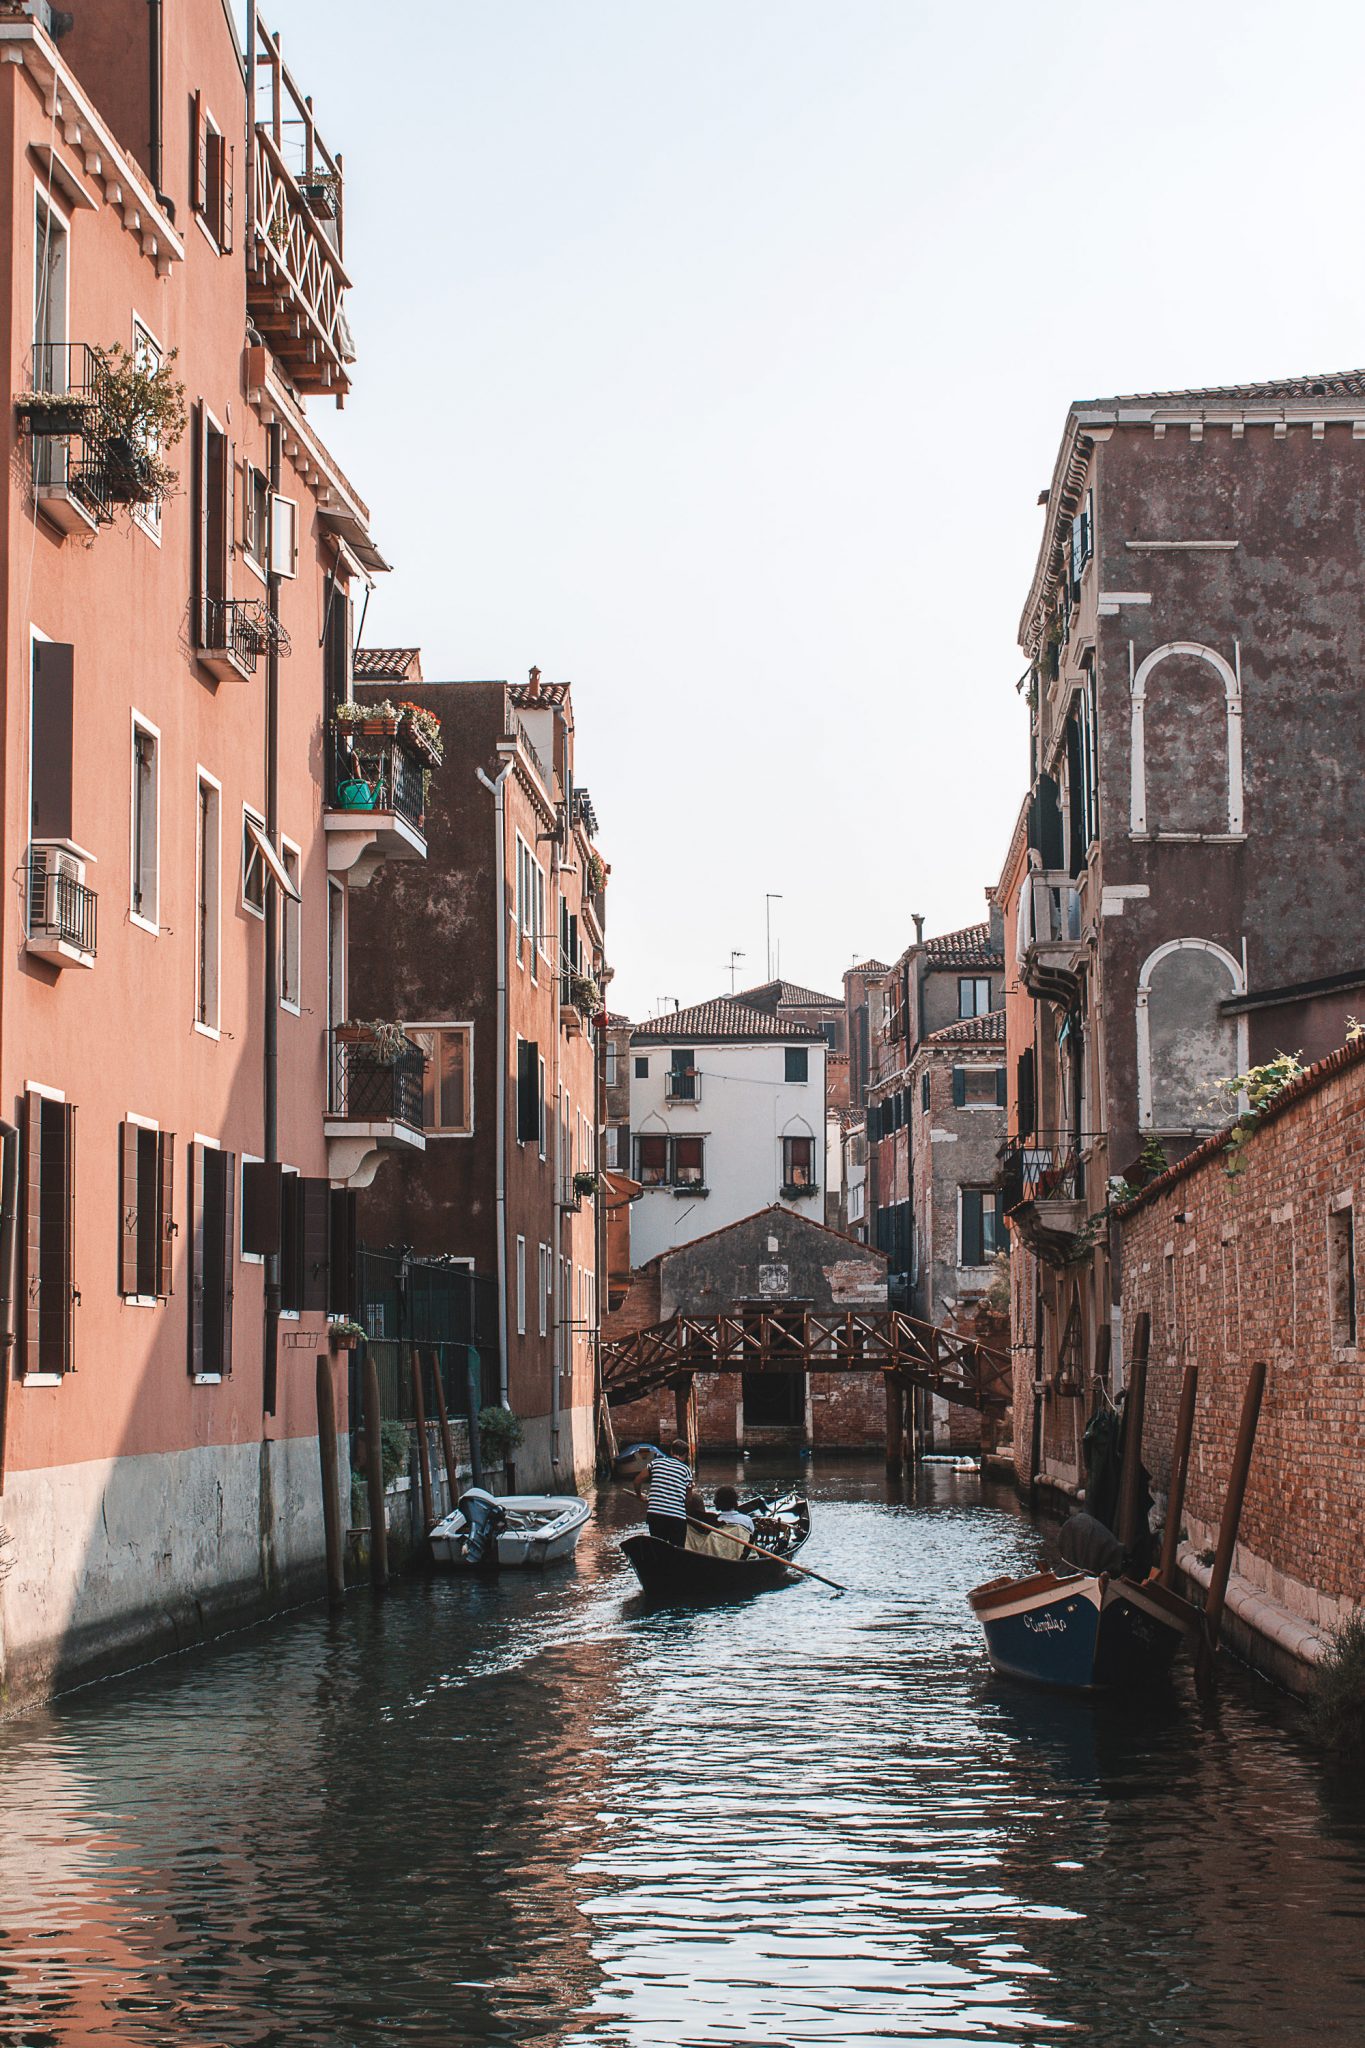 Dicas de hotéis baratos em Veneza